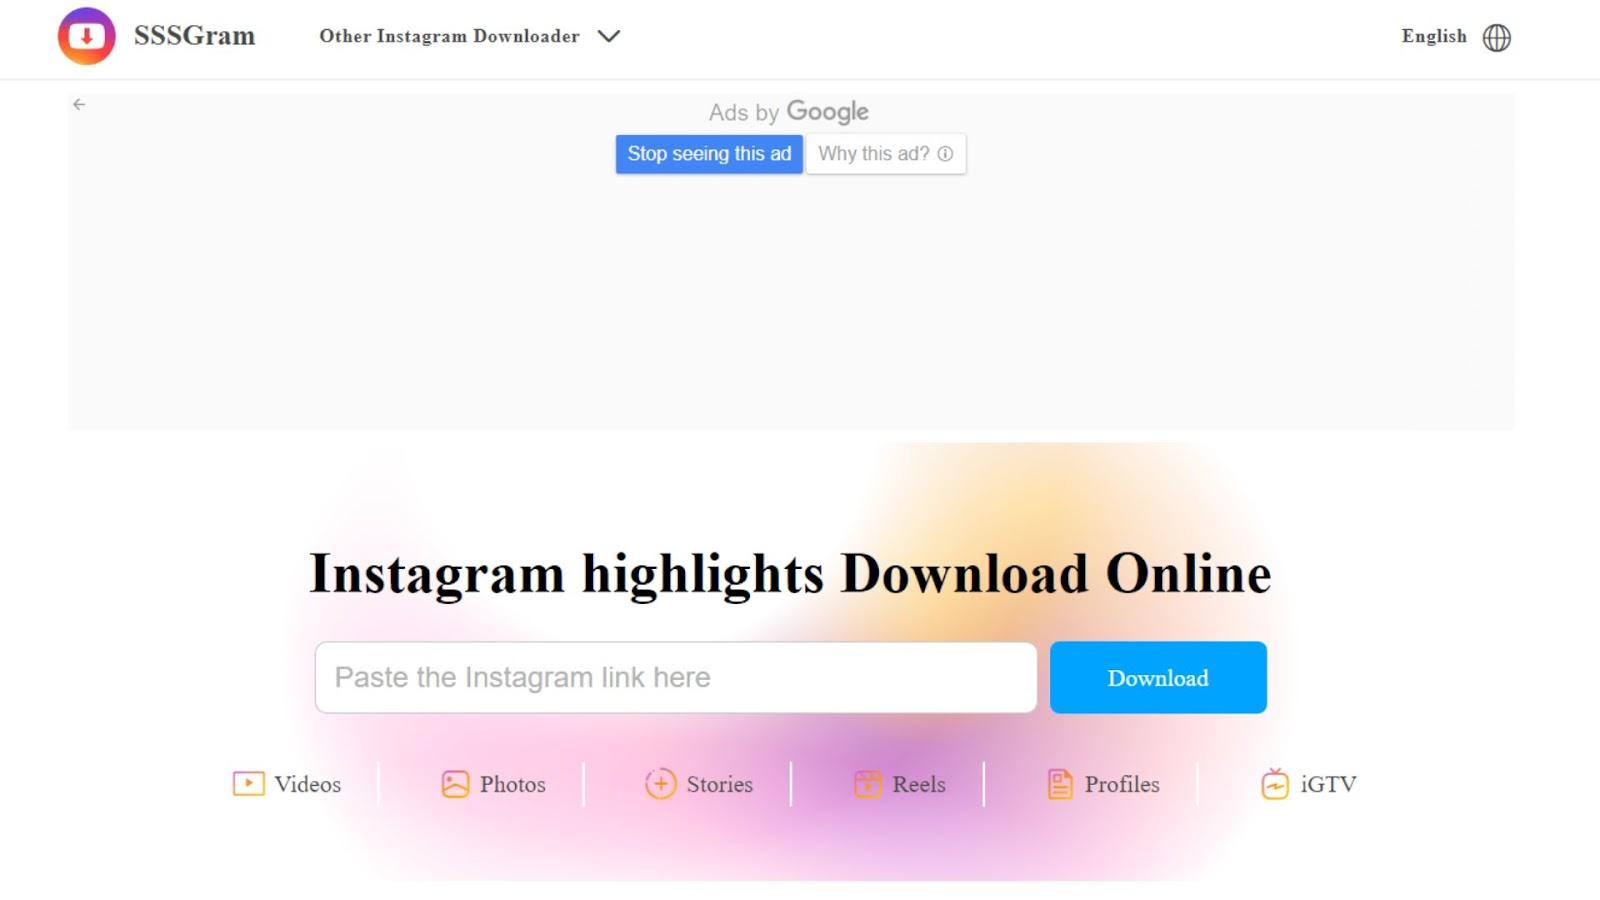 SSSGram - Instagram highlights Download Online